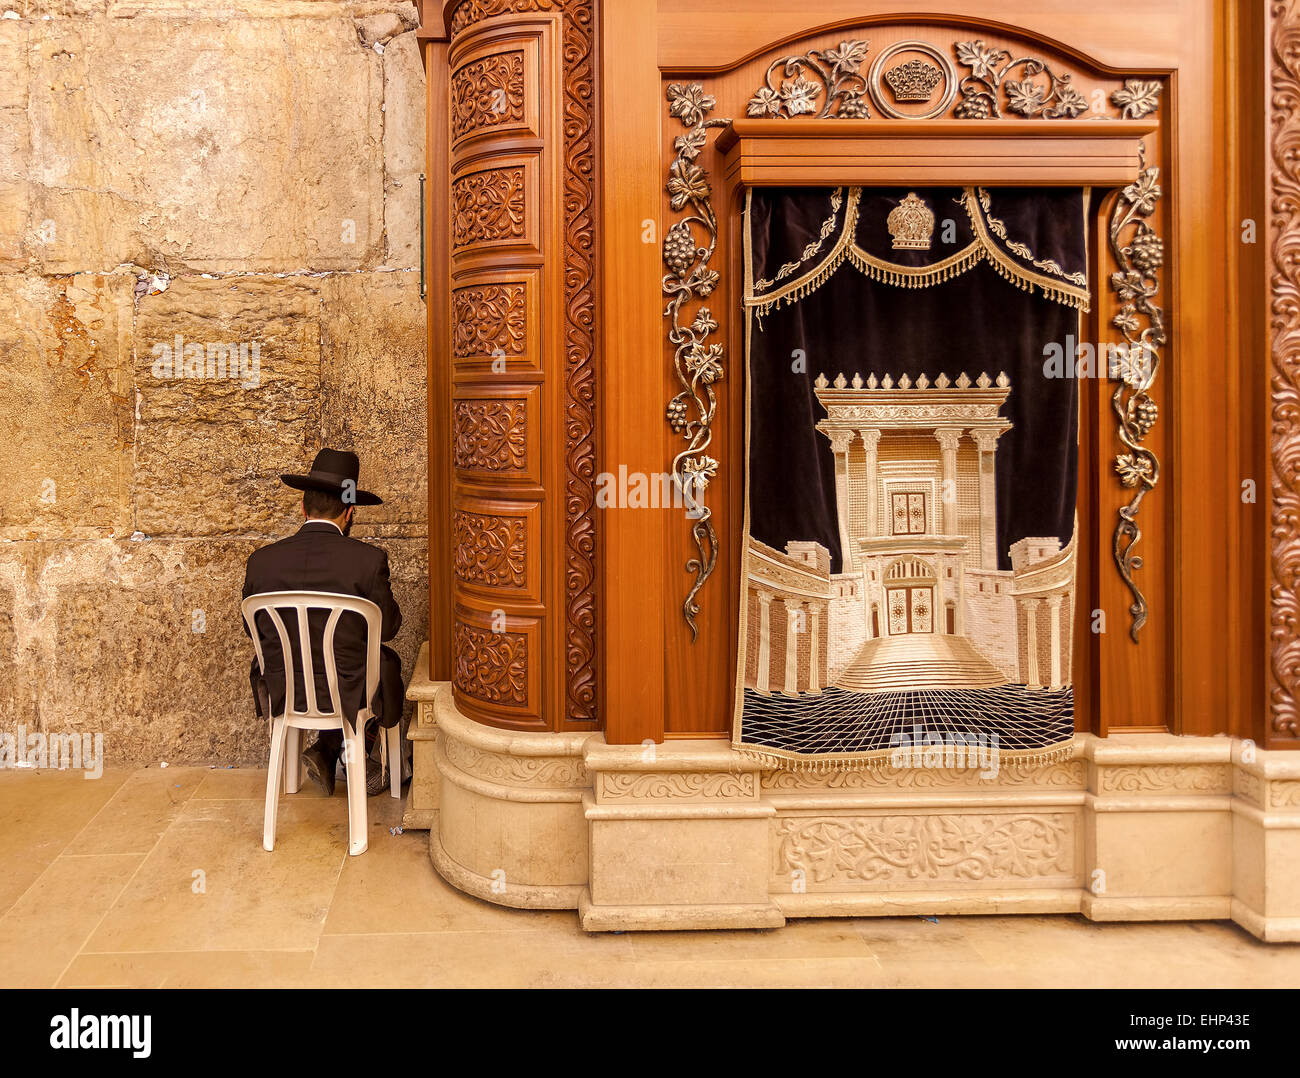 Cabinet en bois sculpter avec rouleaux de la Torah et la prière dans la grotte Synagogue à Jérusalem, Israël. Banque D'Images